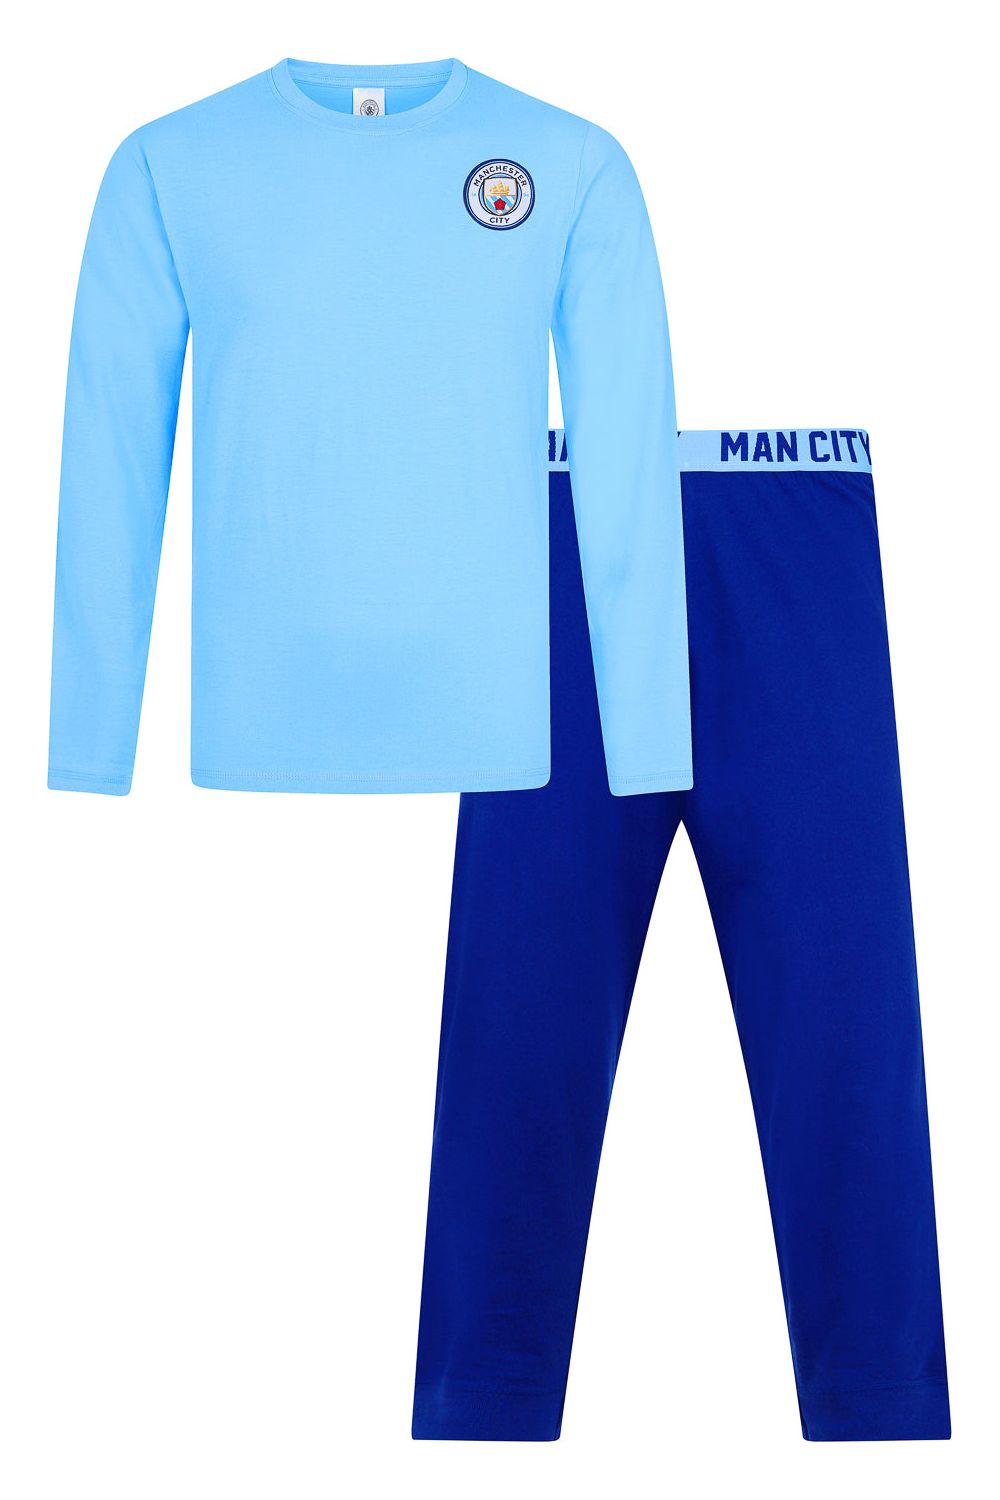 Mens Manchester City Football Club Long Pyjamas - Pyjamas.com